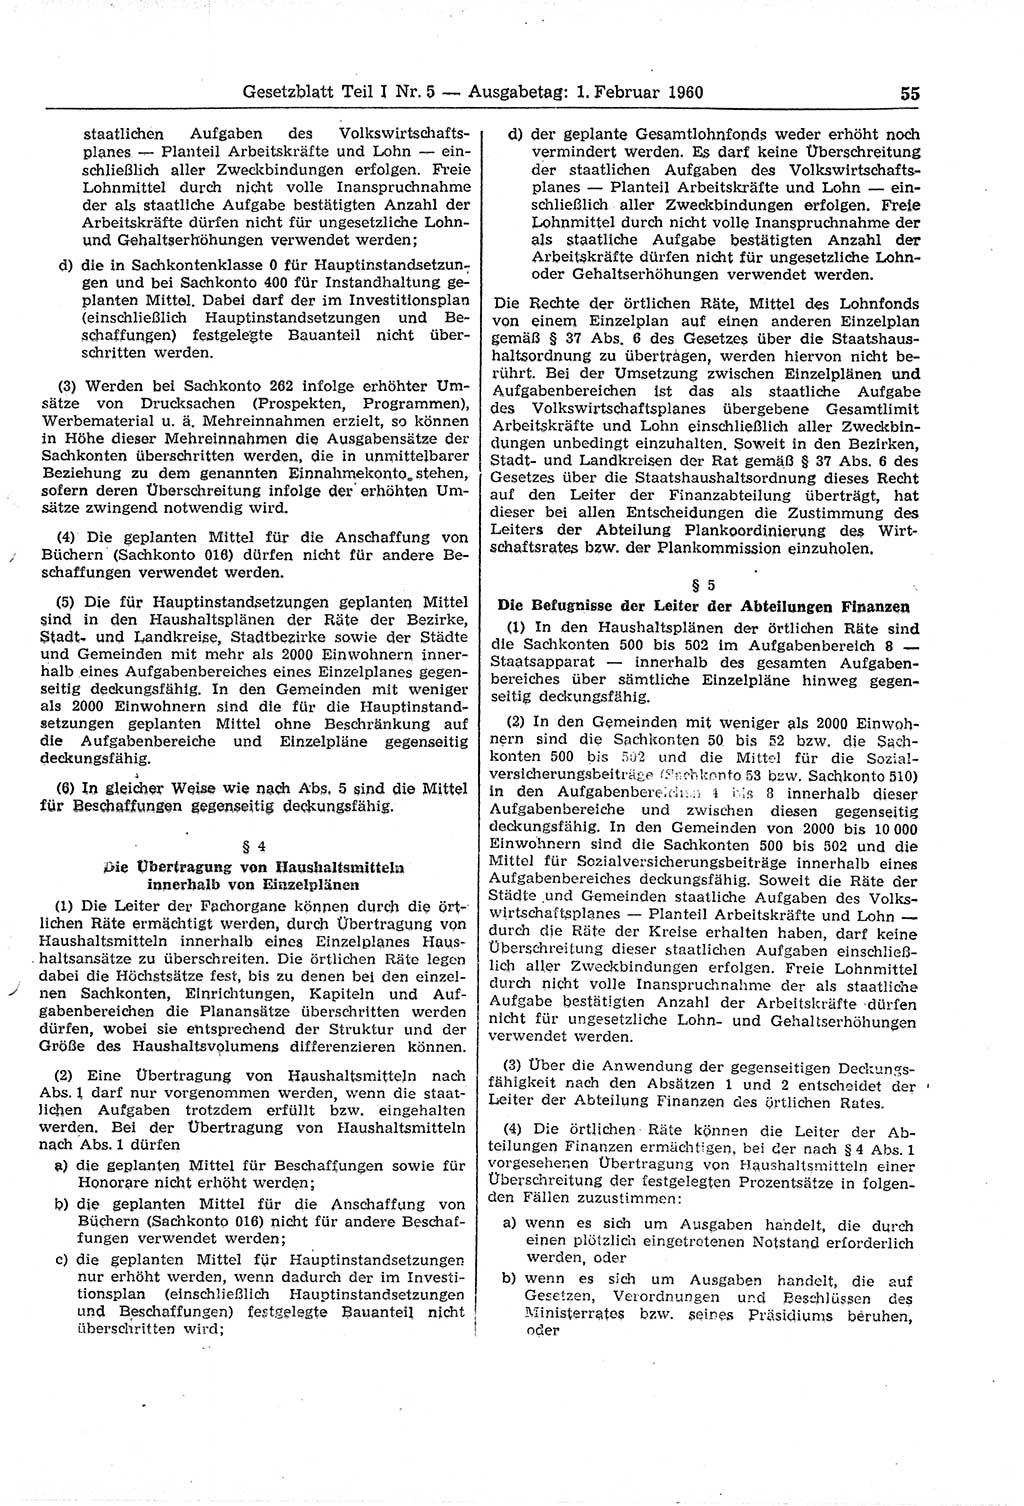 Gesetzblatt (GBl.) der Deutschen Demokratischen Republik (DDR) Teil Ⅰ 1960, Seite 55 (GBl. DDR Ⅰ 1960, S. 55)